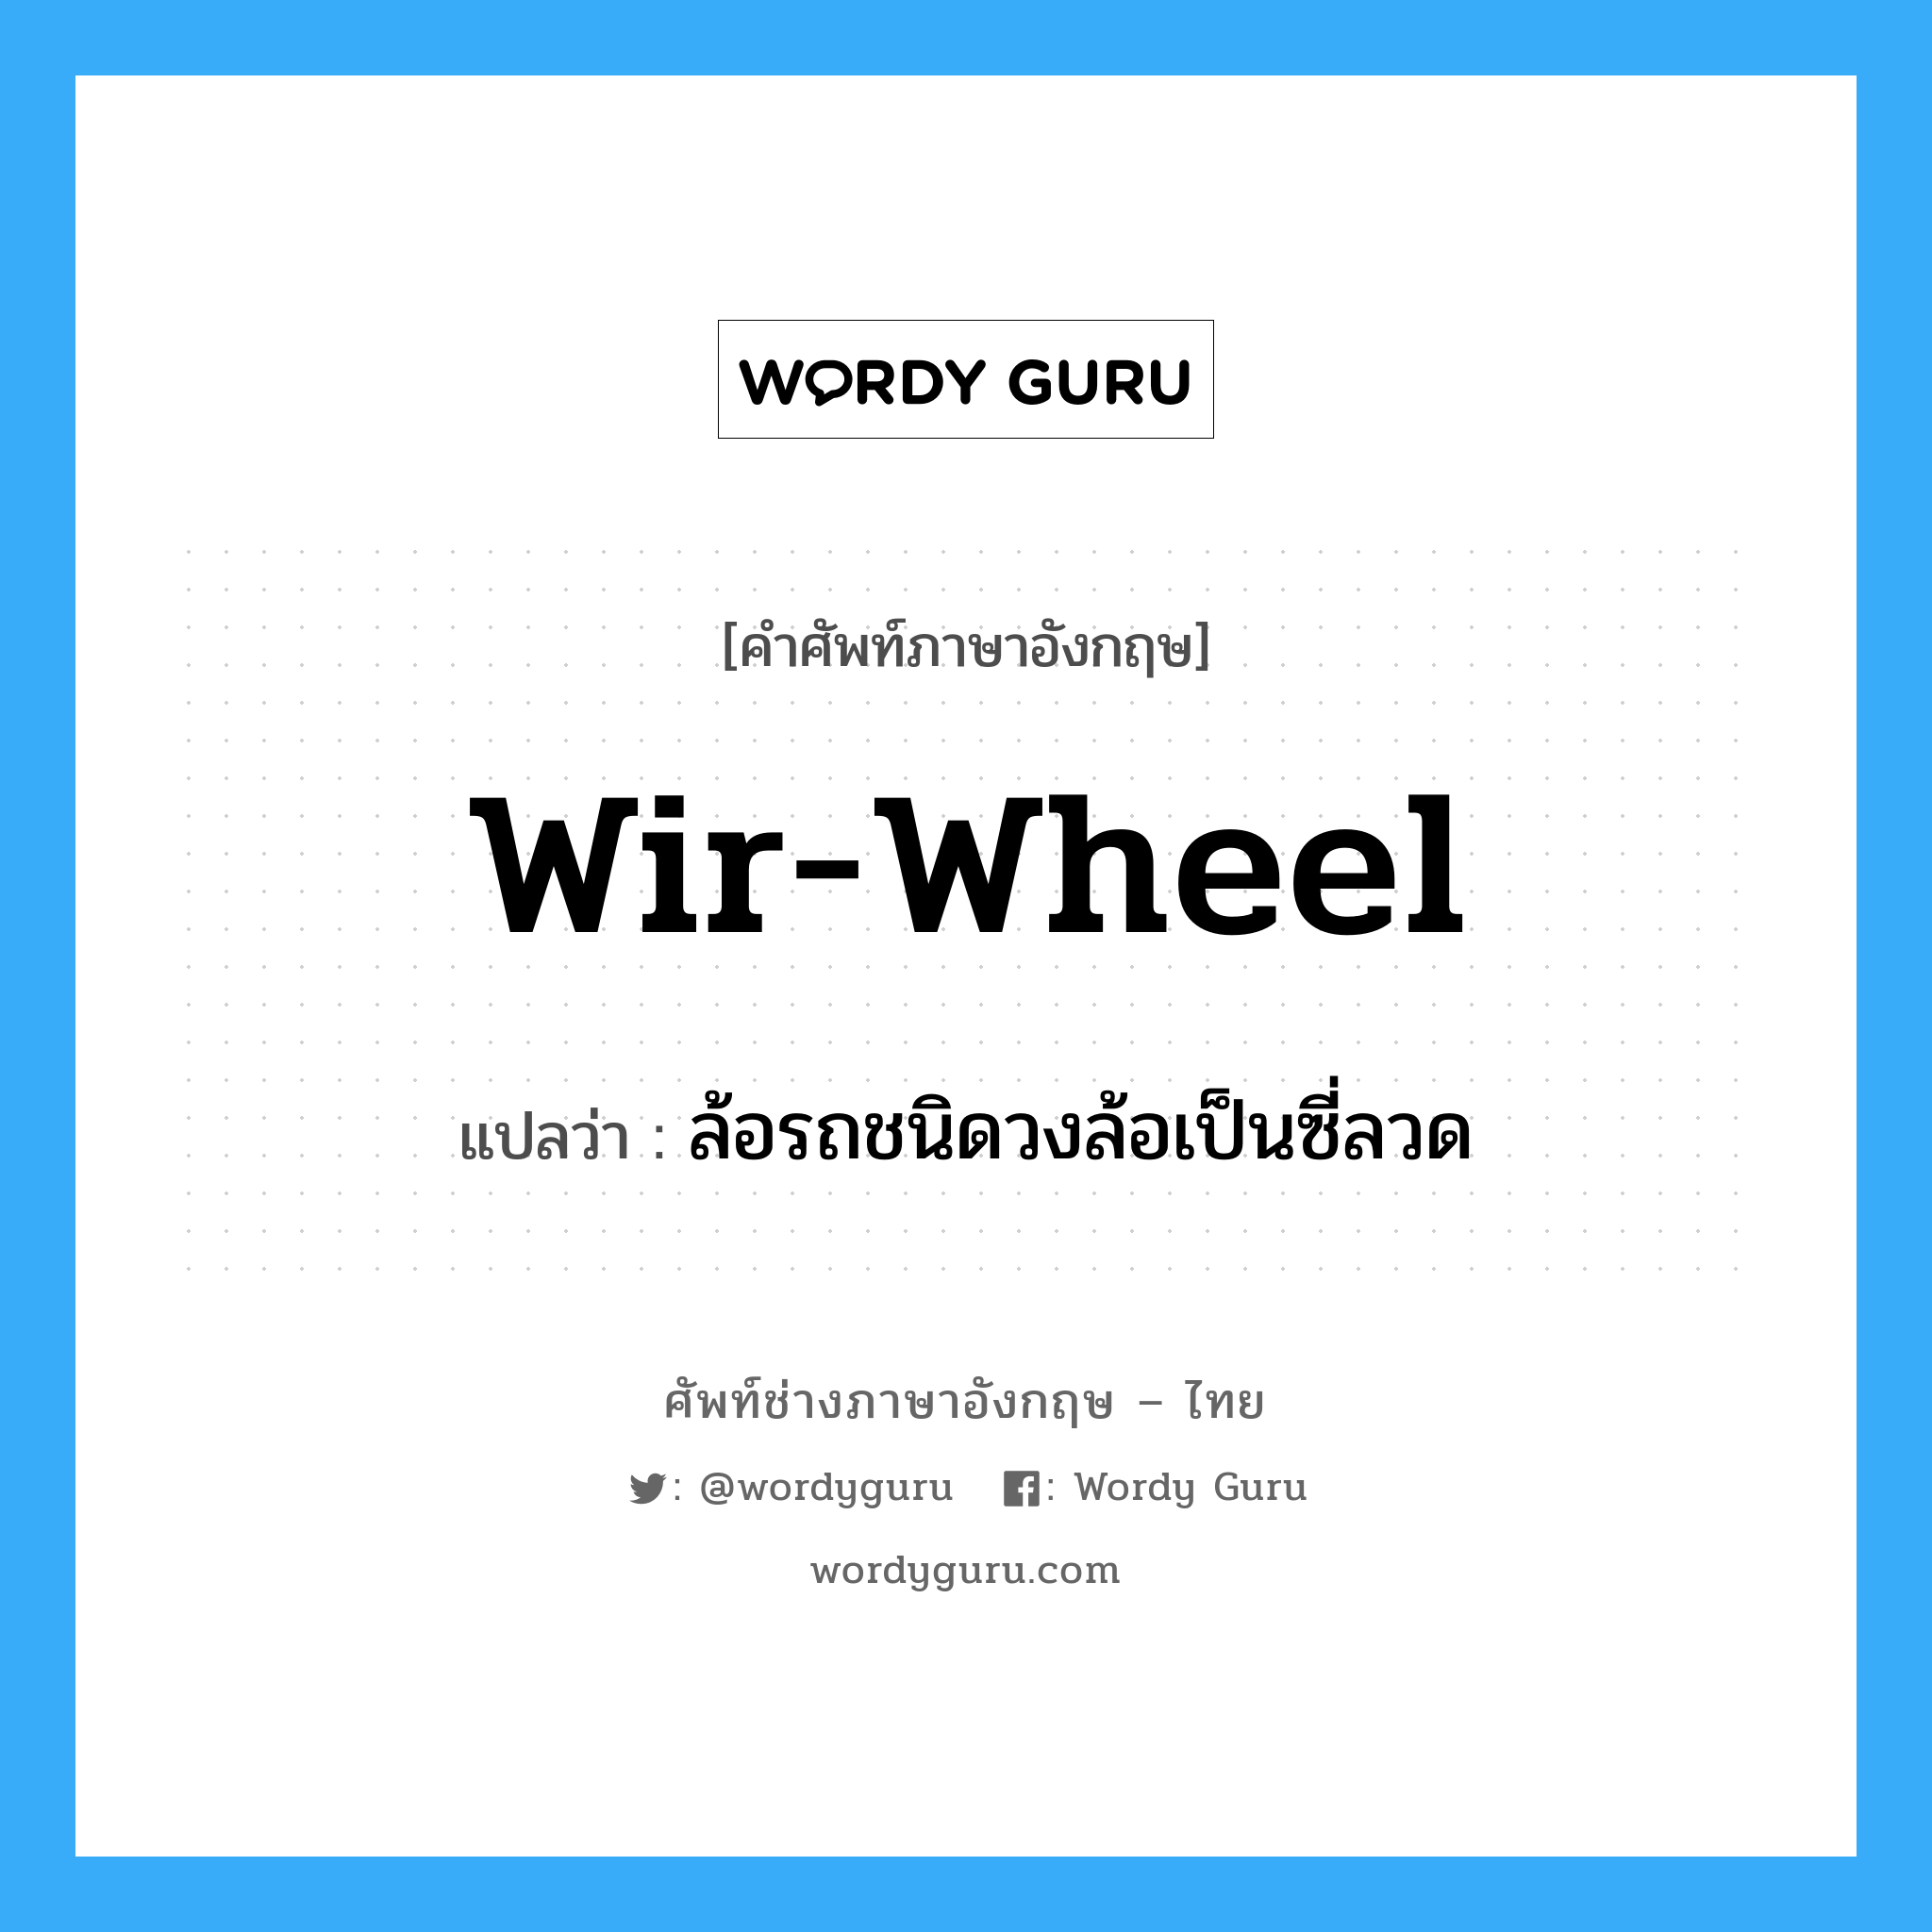 wir-wheel แปลว่า?, คำศัพท์ช่างภาษาอังกฤษ - ไทย wir-wheel คำศัพท์ภาษาอังกฤษ wir-wheel แปลว่า ล้อรถชนิดวงล้อเป็นซี่ลวด